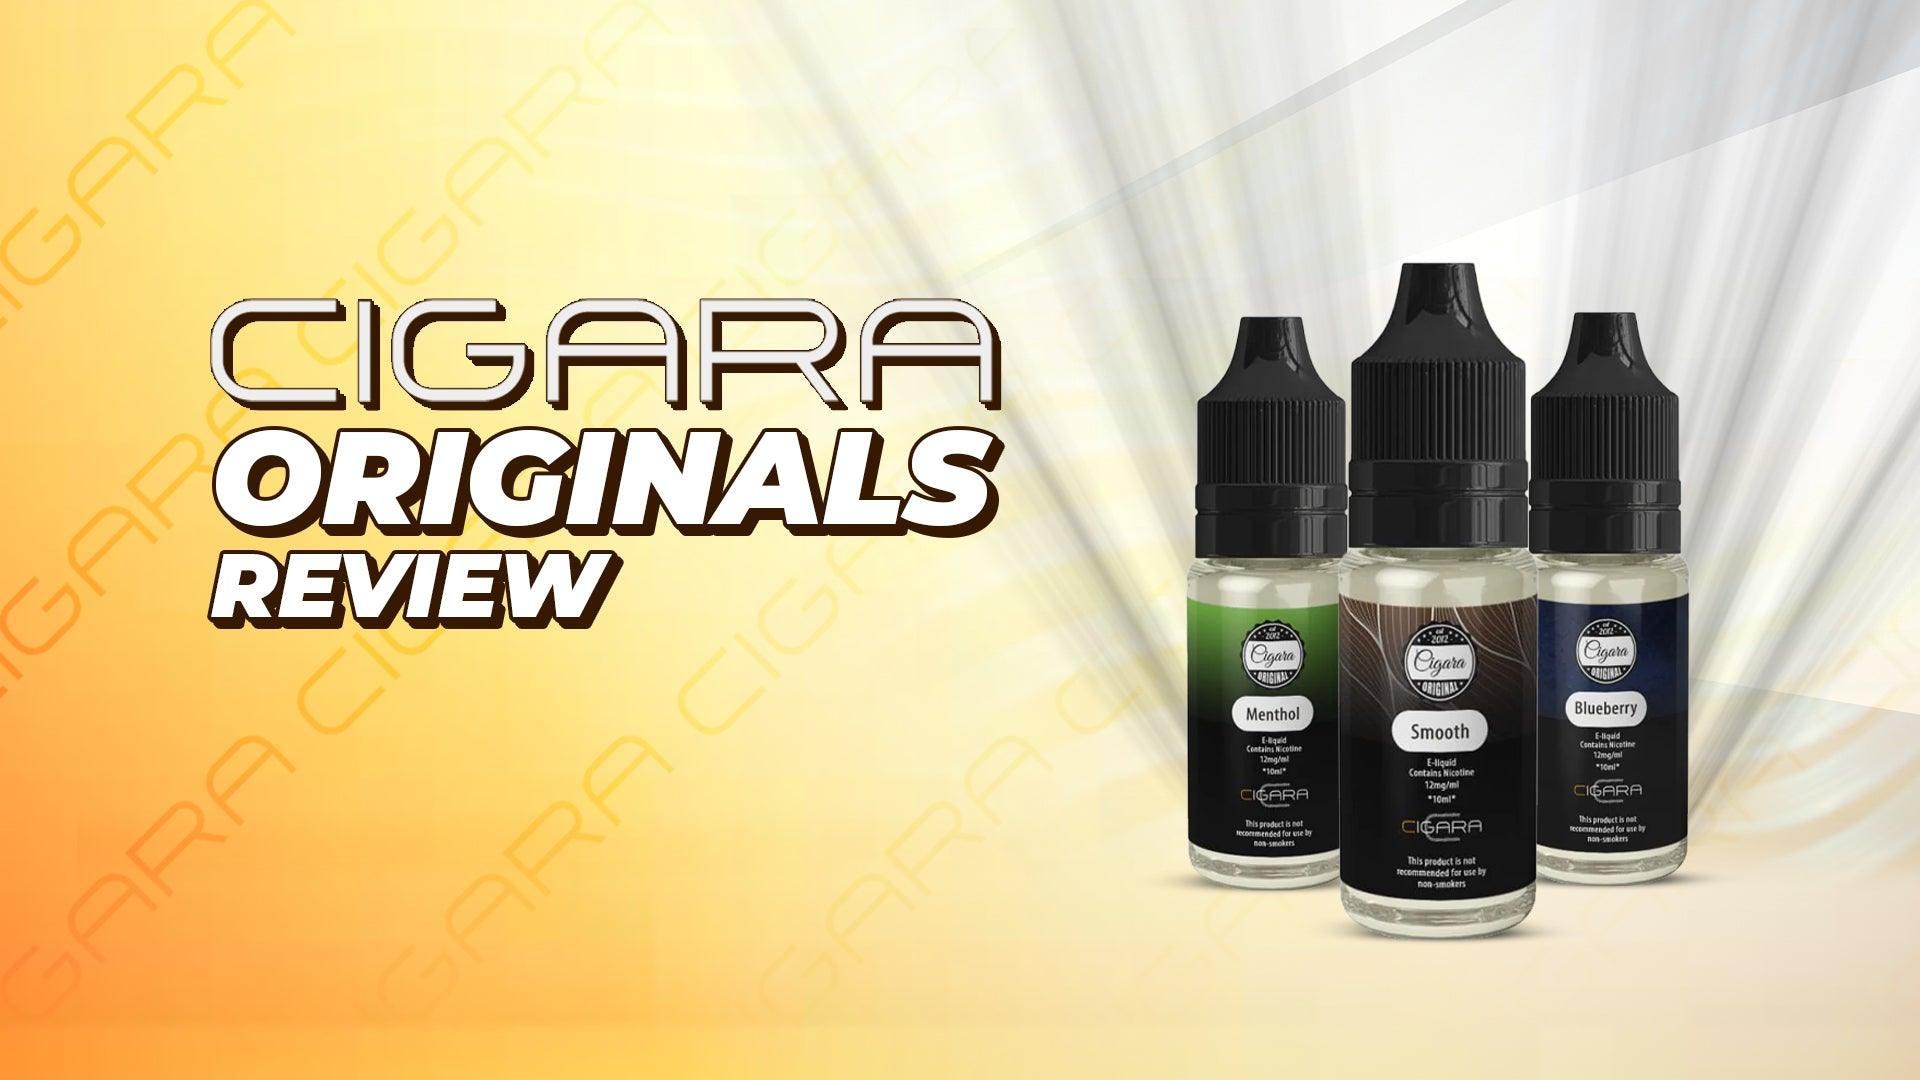 Cigara Originals Review  - Brand:Cigara Originals, Category:E-Liquids, Sub Category:Starter Liquids